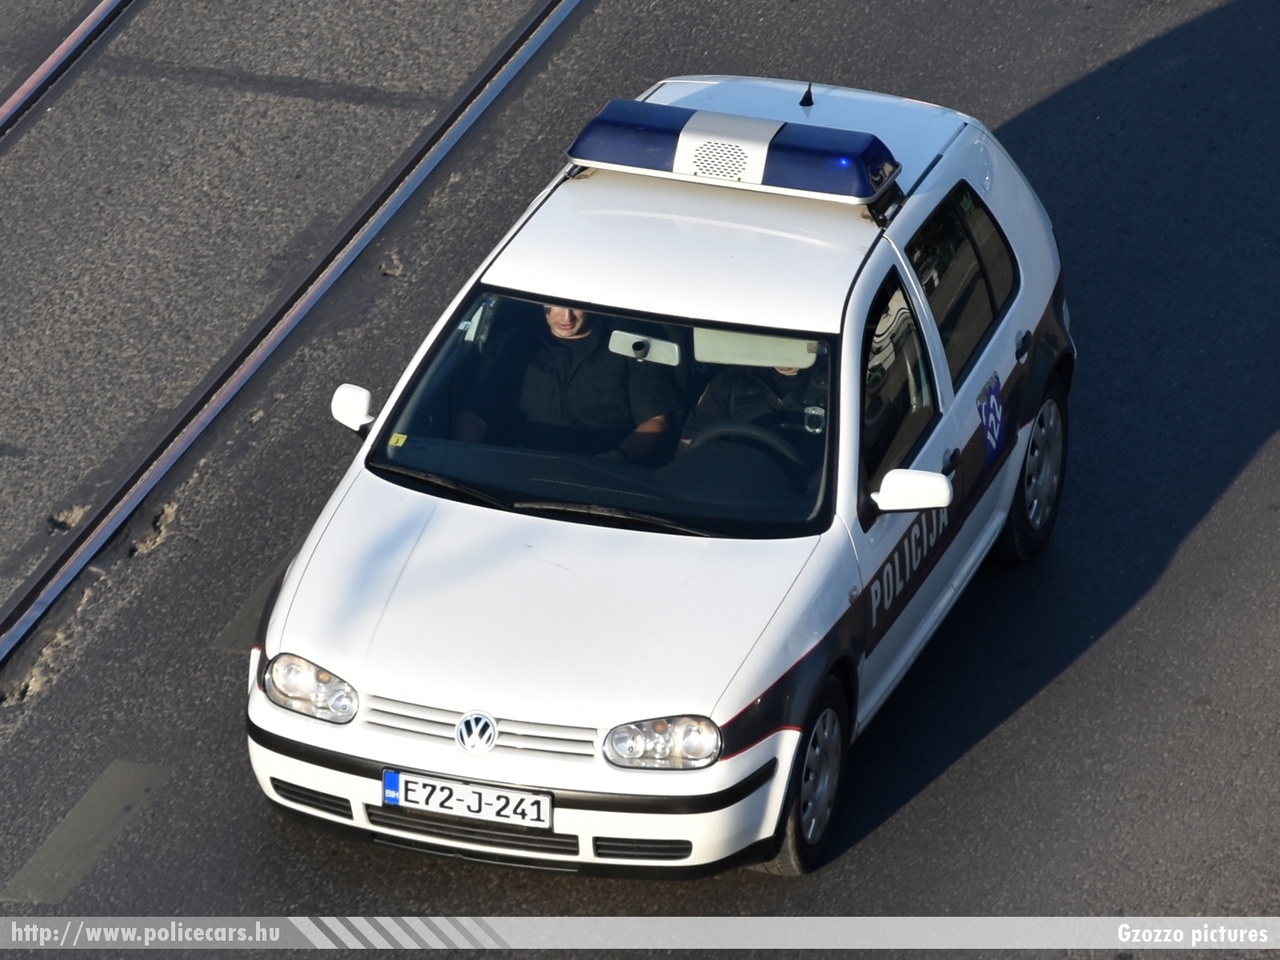 Volkswagen Golf IV, fotó: Gzozzo pictures
Keywords: Bosznia-Hercegovina rendőr rendőrautó rendőrség bosnia bosnia-herzegovina police policecar